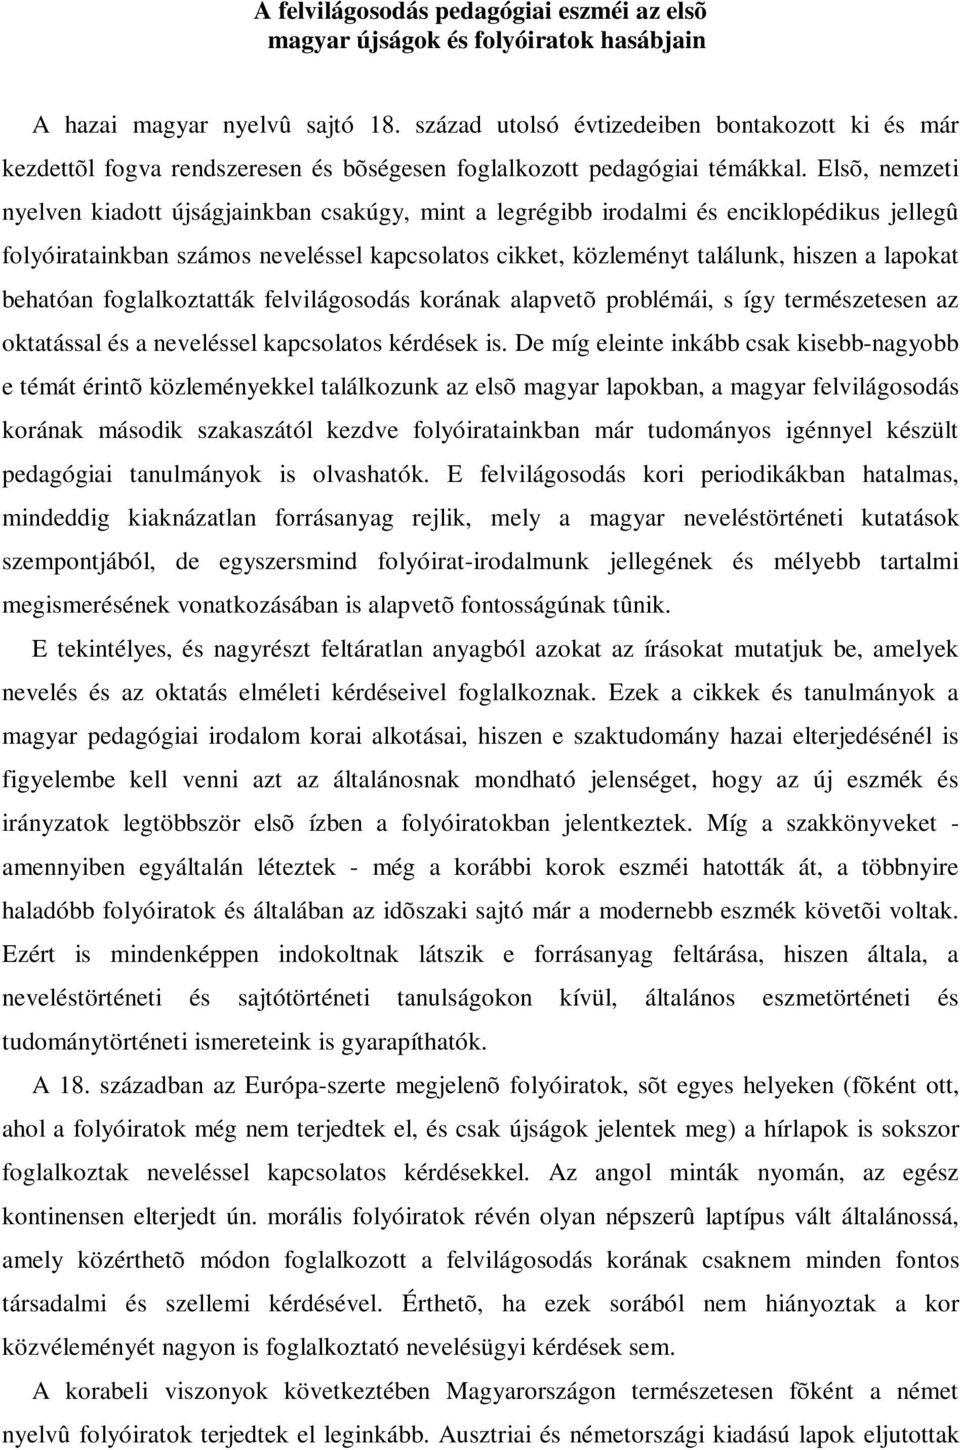 Elsõ, nemzeti nyelven kiadott újságjainkban csakúgy, mint a legrégibb irodalmi és enciklopédikus jellegû folyóiratainkban számos neveléssel kapcsolatos cikket, közleményt találunk, hiszen a lapokat